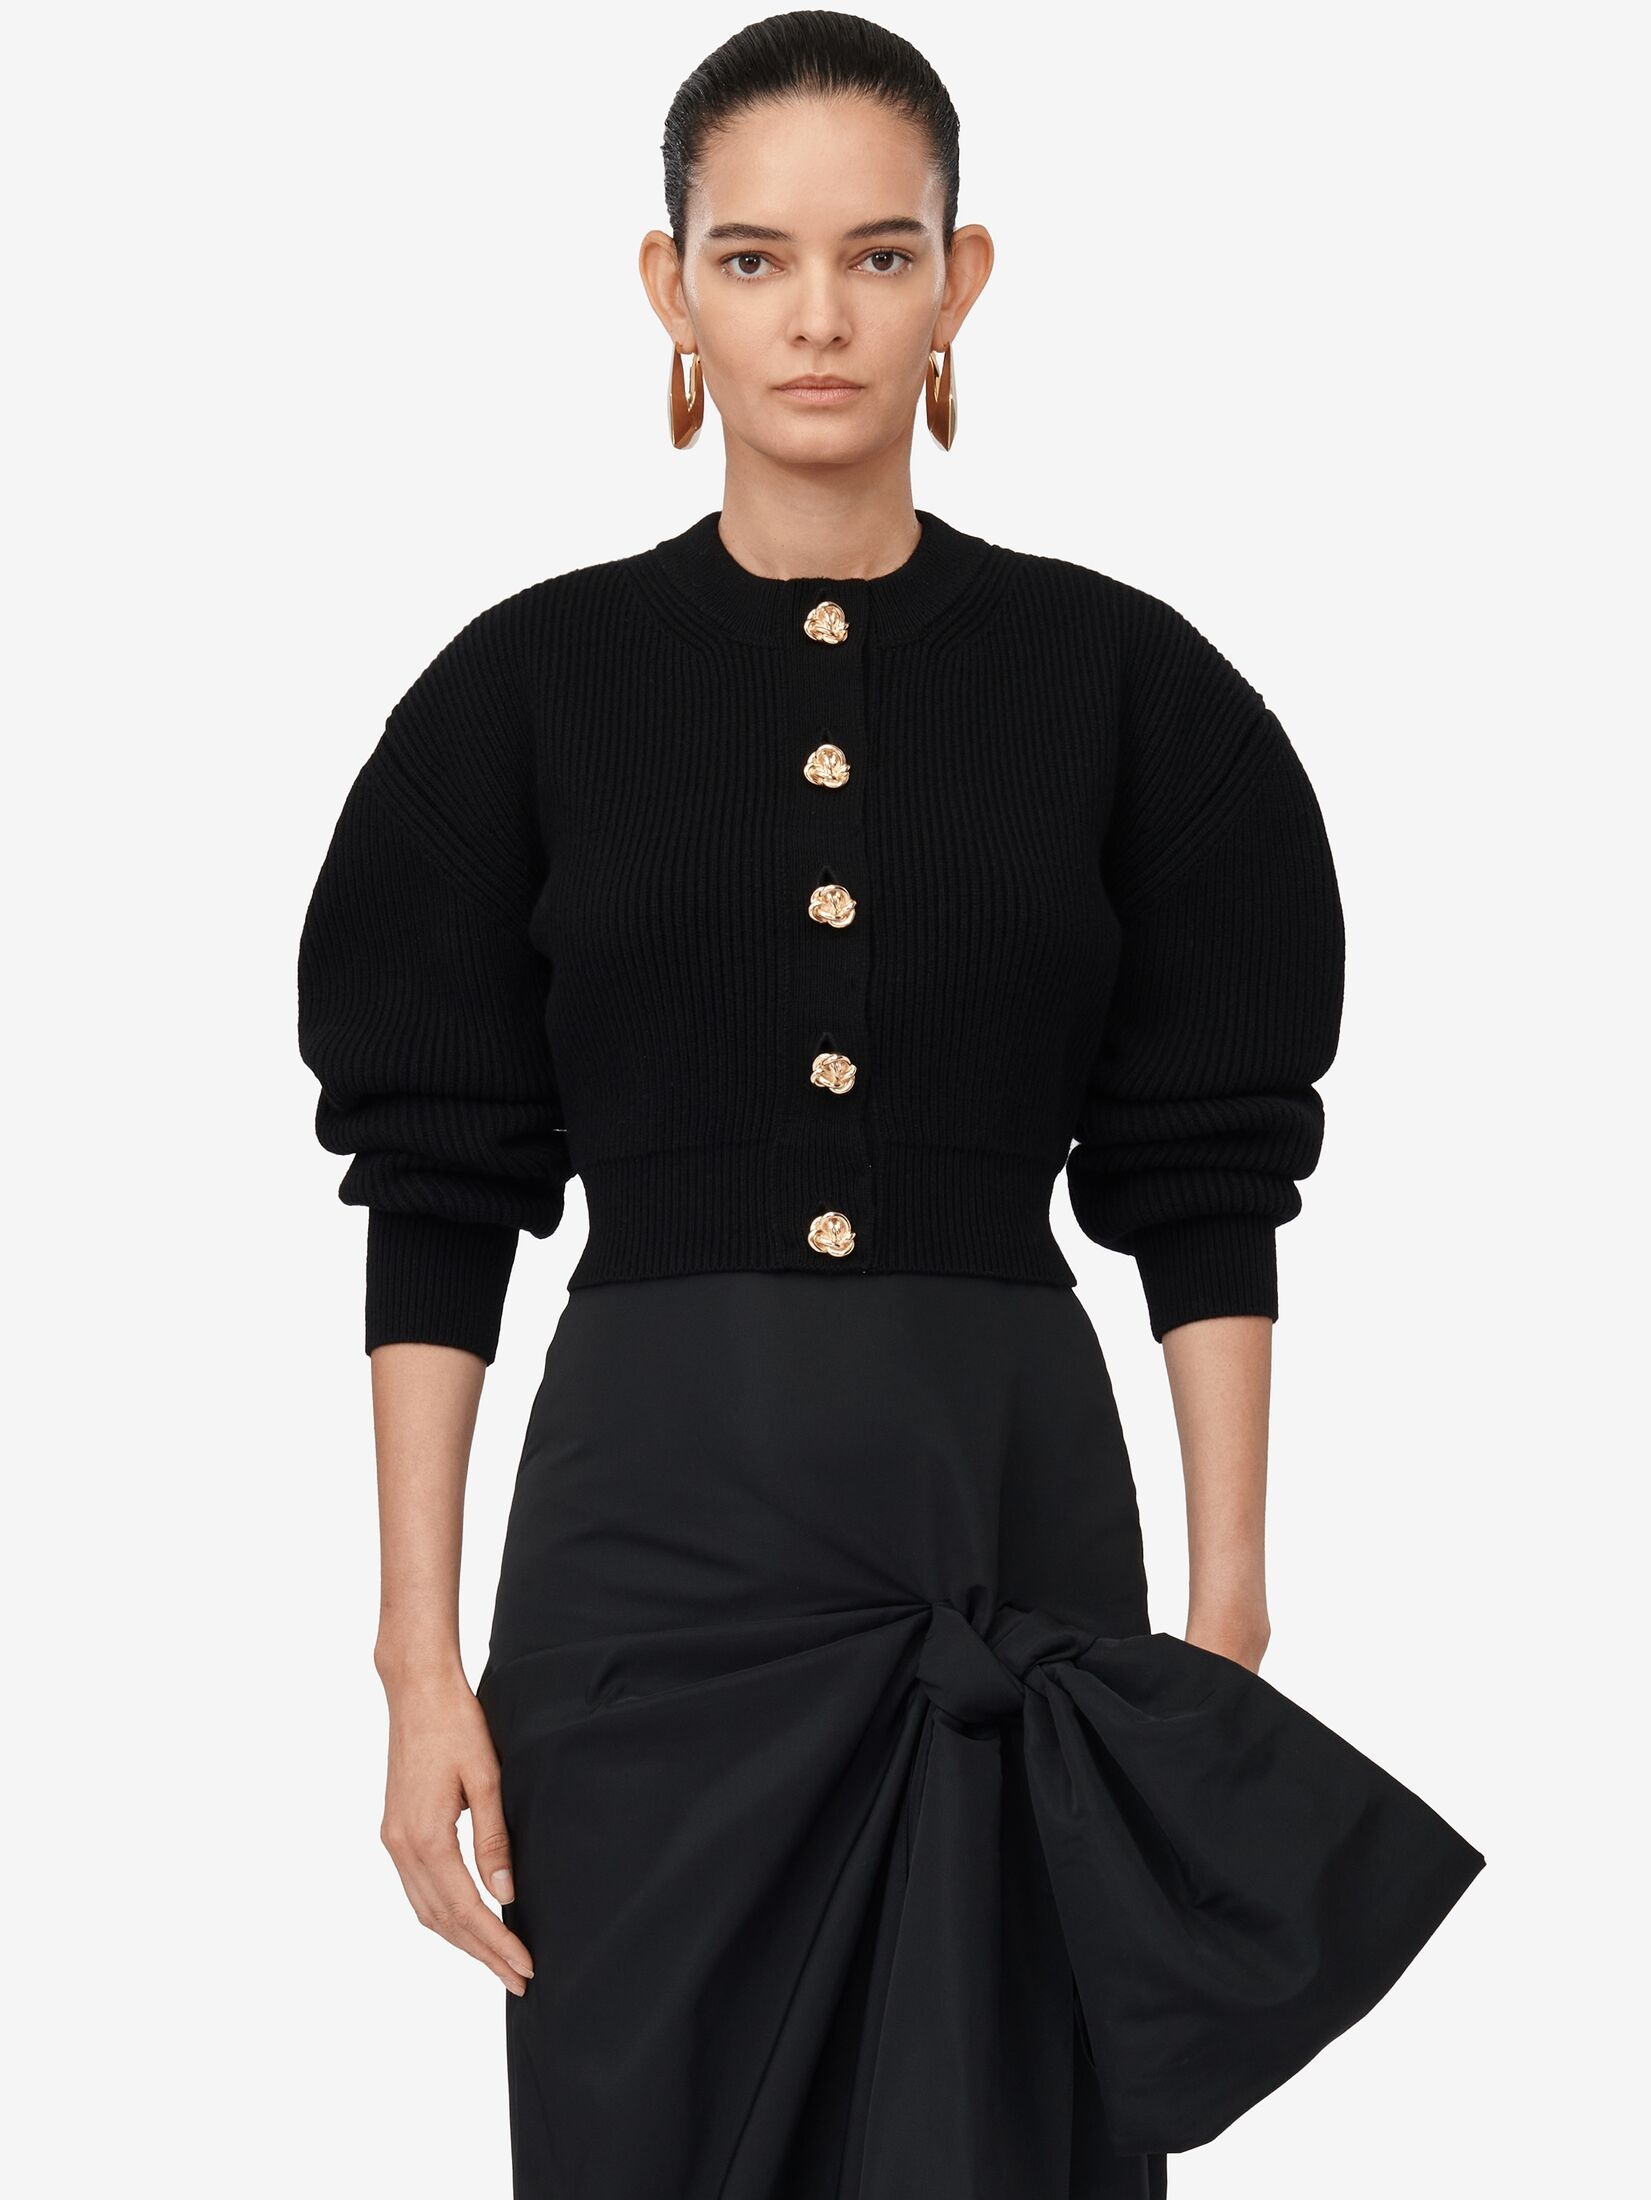 Women's Bow Detail Slim Skirt in Black - 6